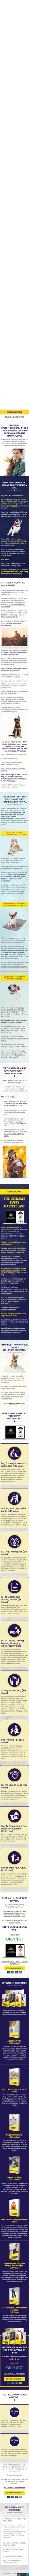 dog training Pet